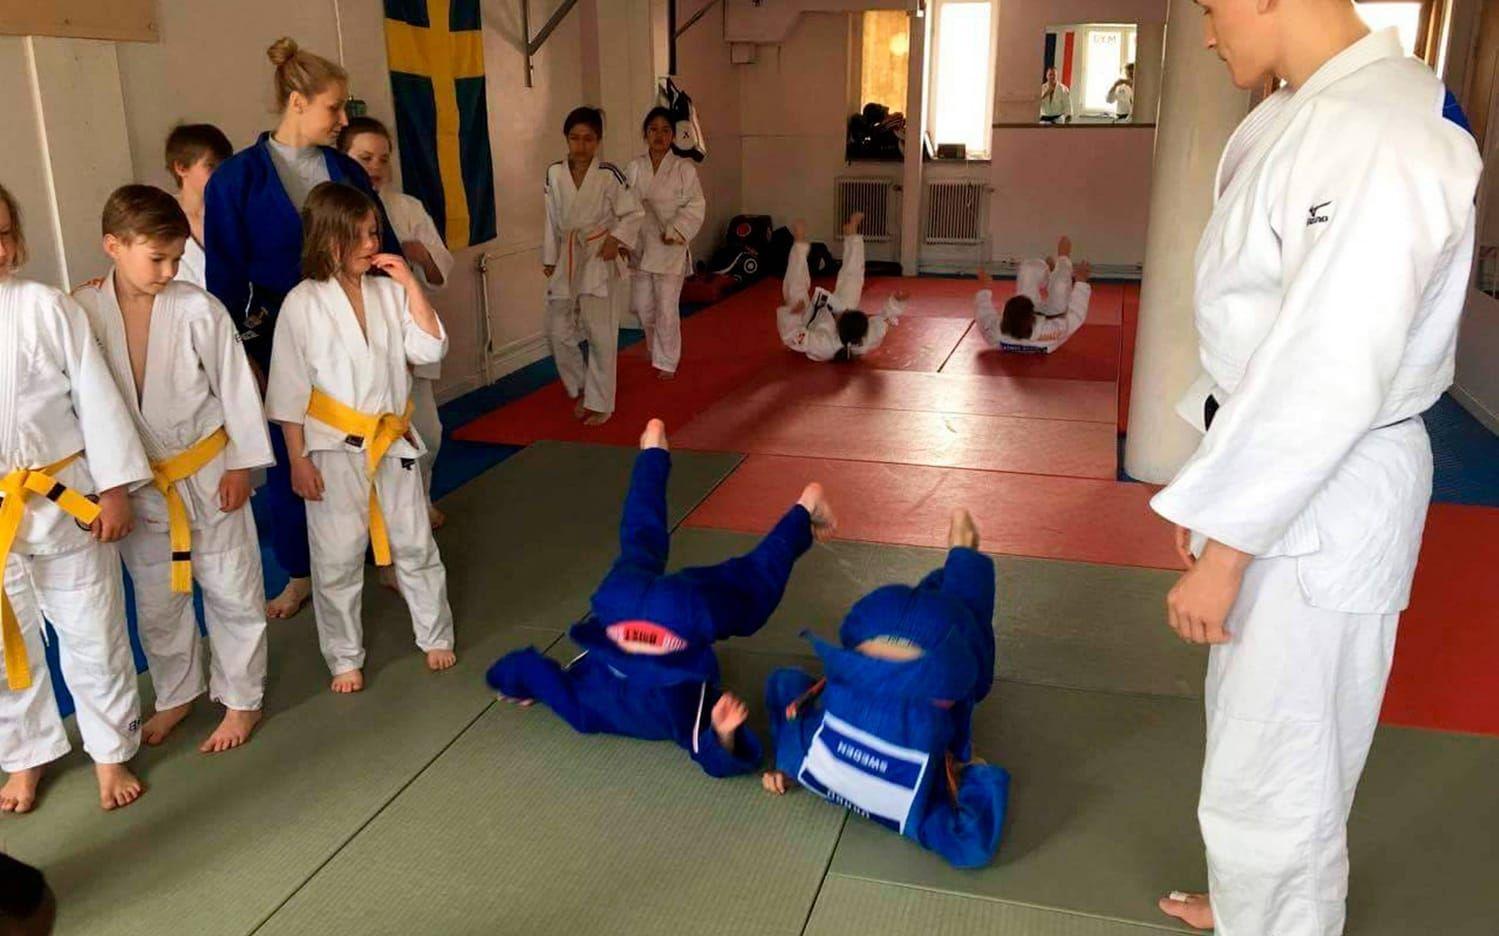 Korpehôla Judoklubb i Uddevalla anordnade Codax Judo Camp i lokalerna på Strömstadsvägen.